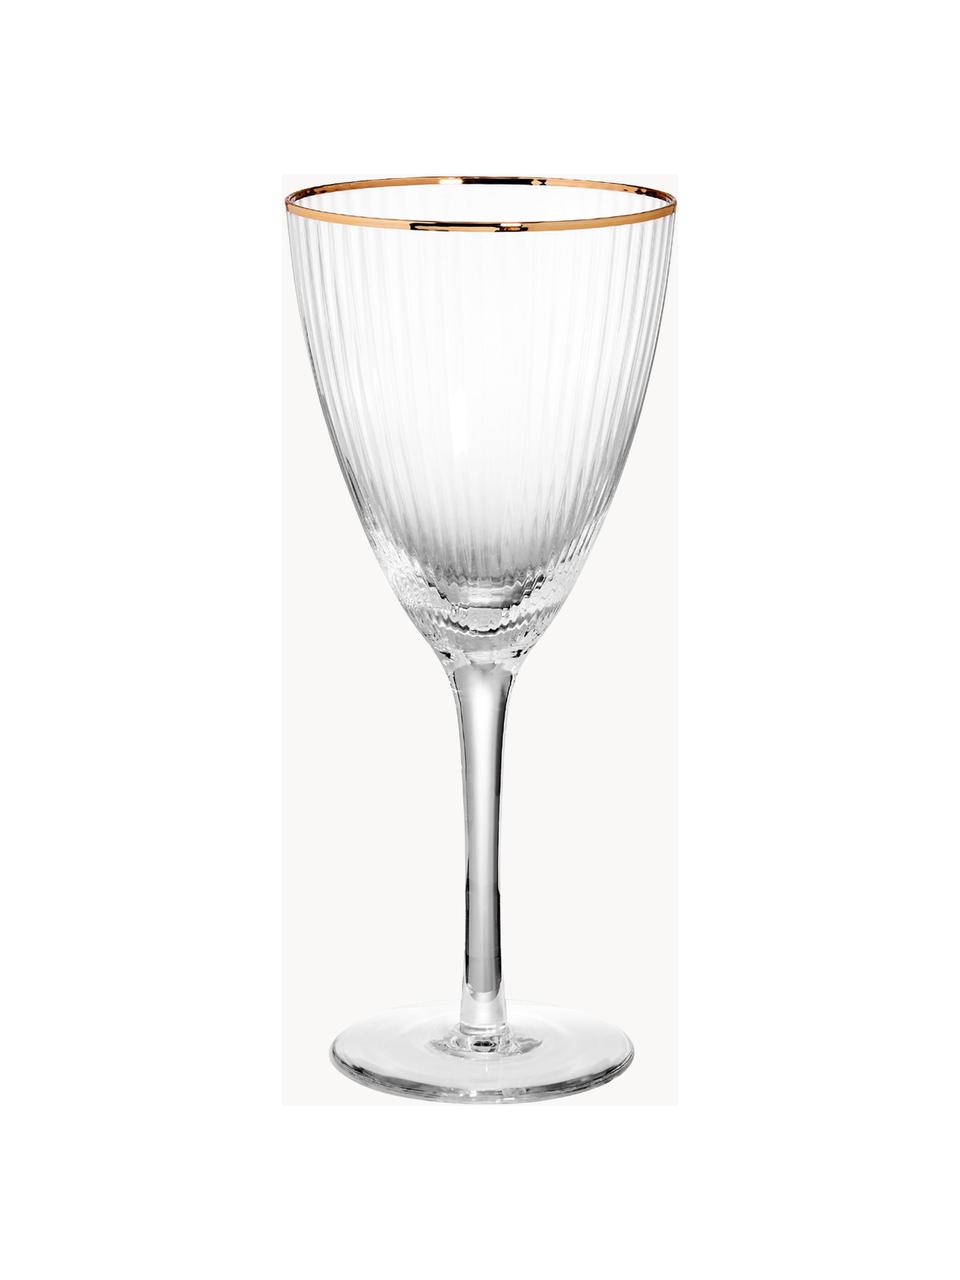 Wijnglazen Golden Twenties, 4 stuks, Glas, Transparant met goudkleurige rand, Ø 9 x H 22 cm, 280 ml